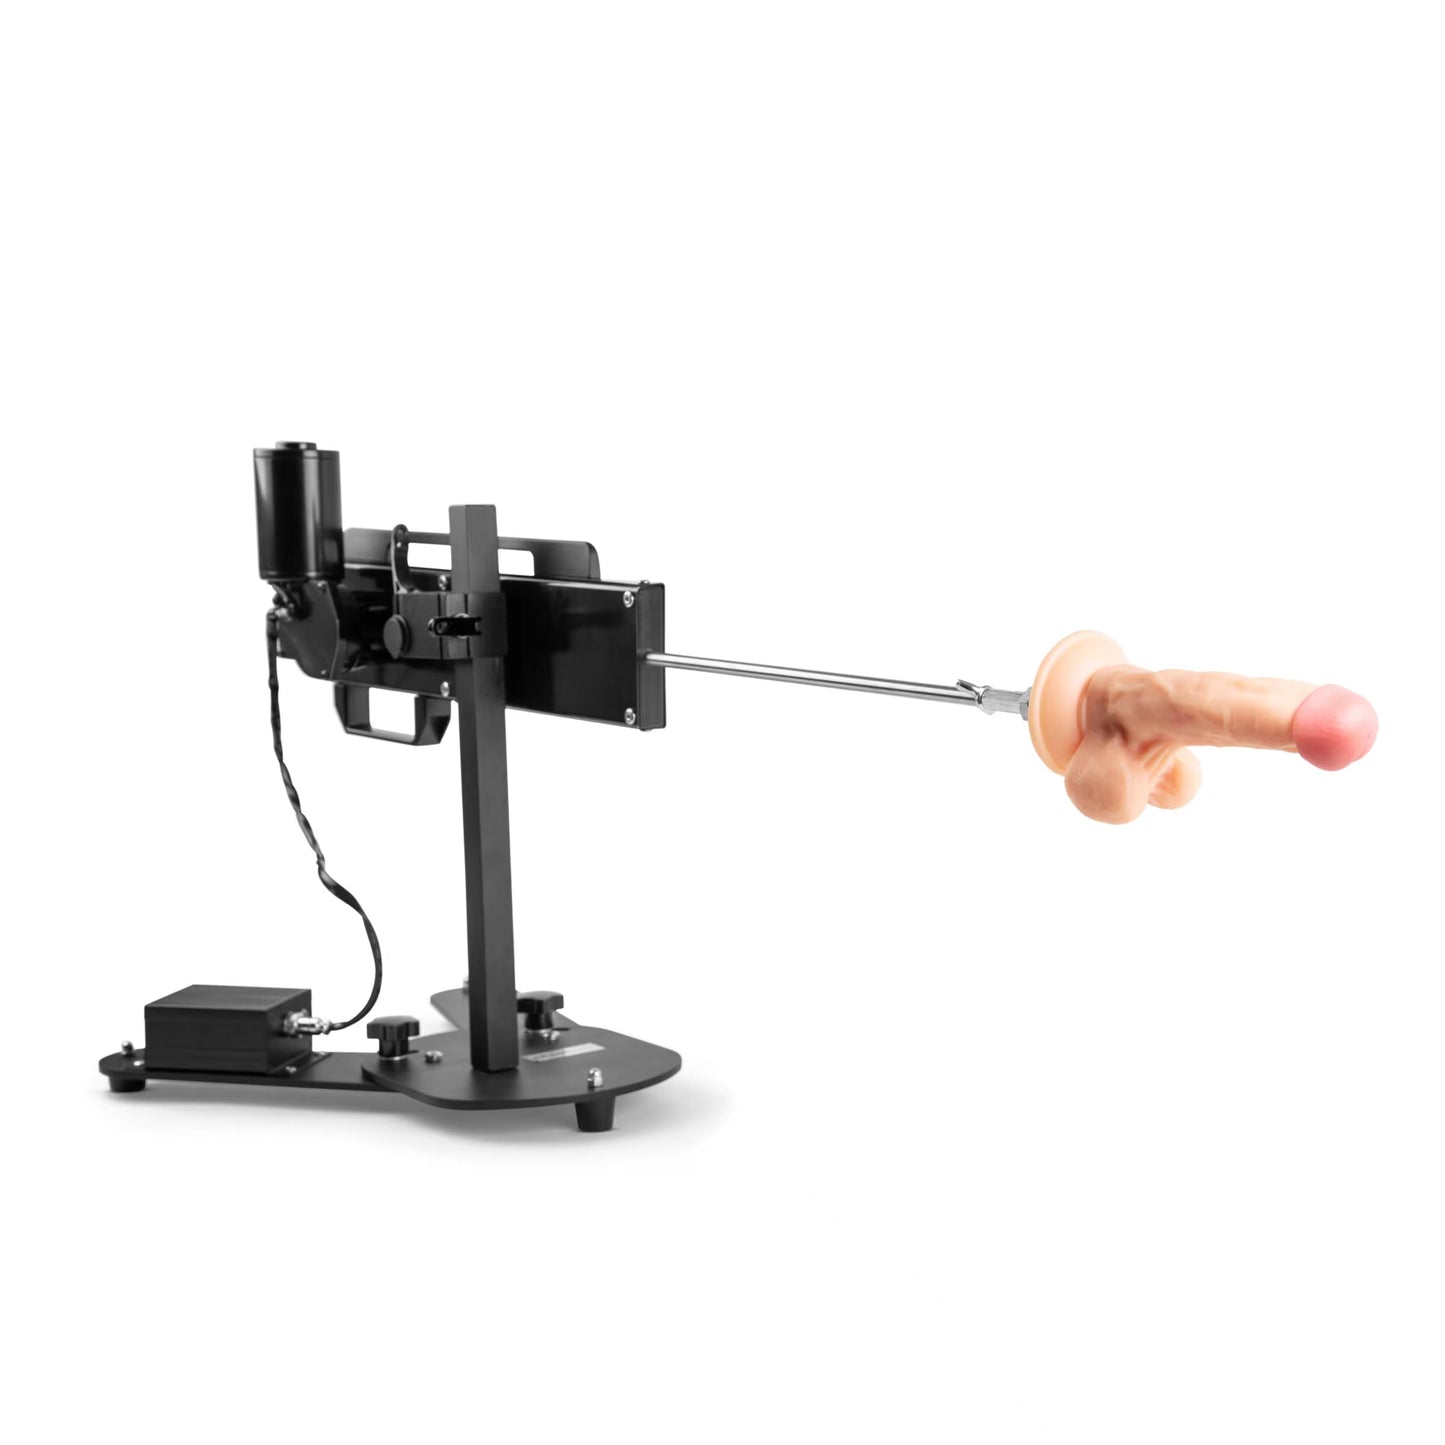 Remote Control Sex Machine - 1x Custom Realistic Dildo Attachment Included